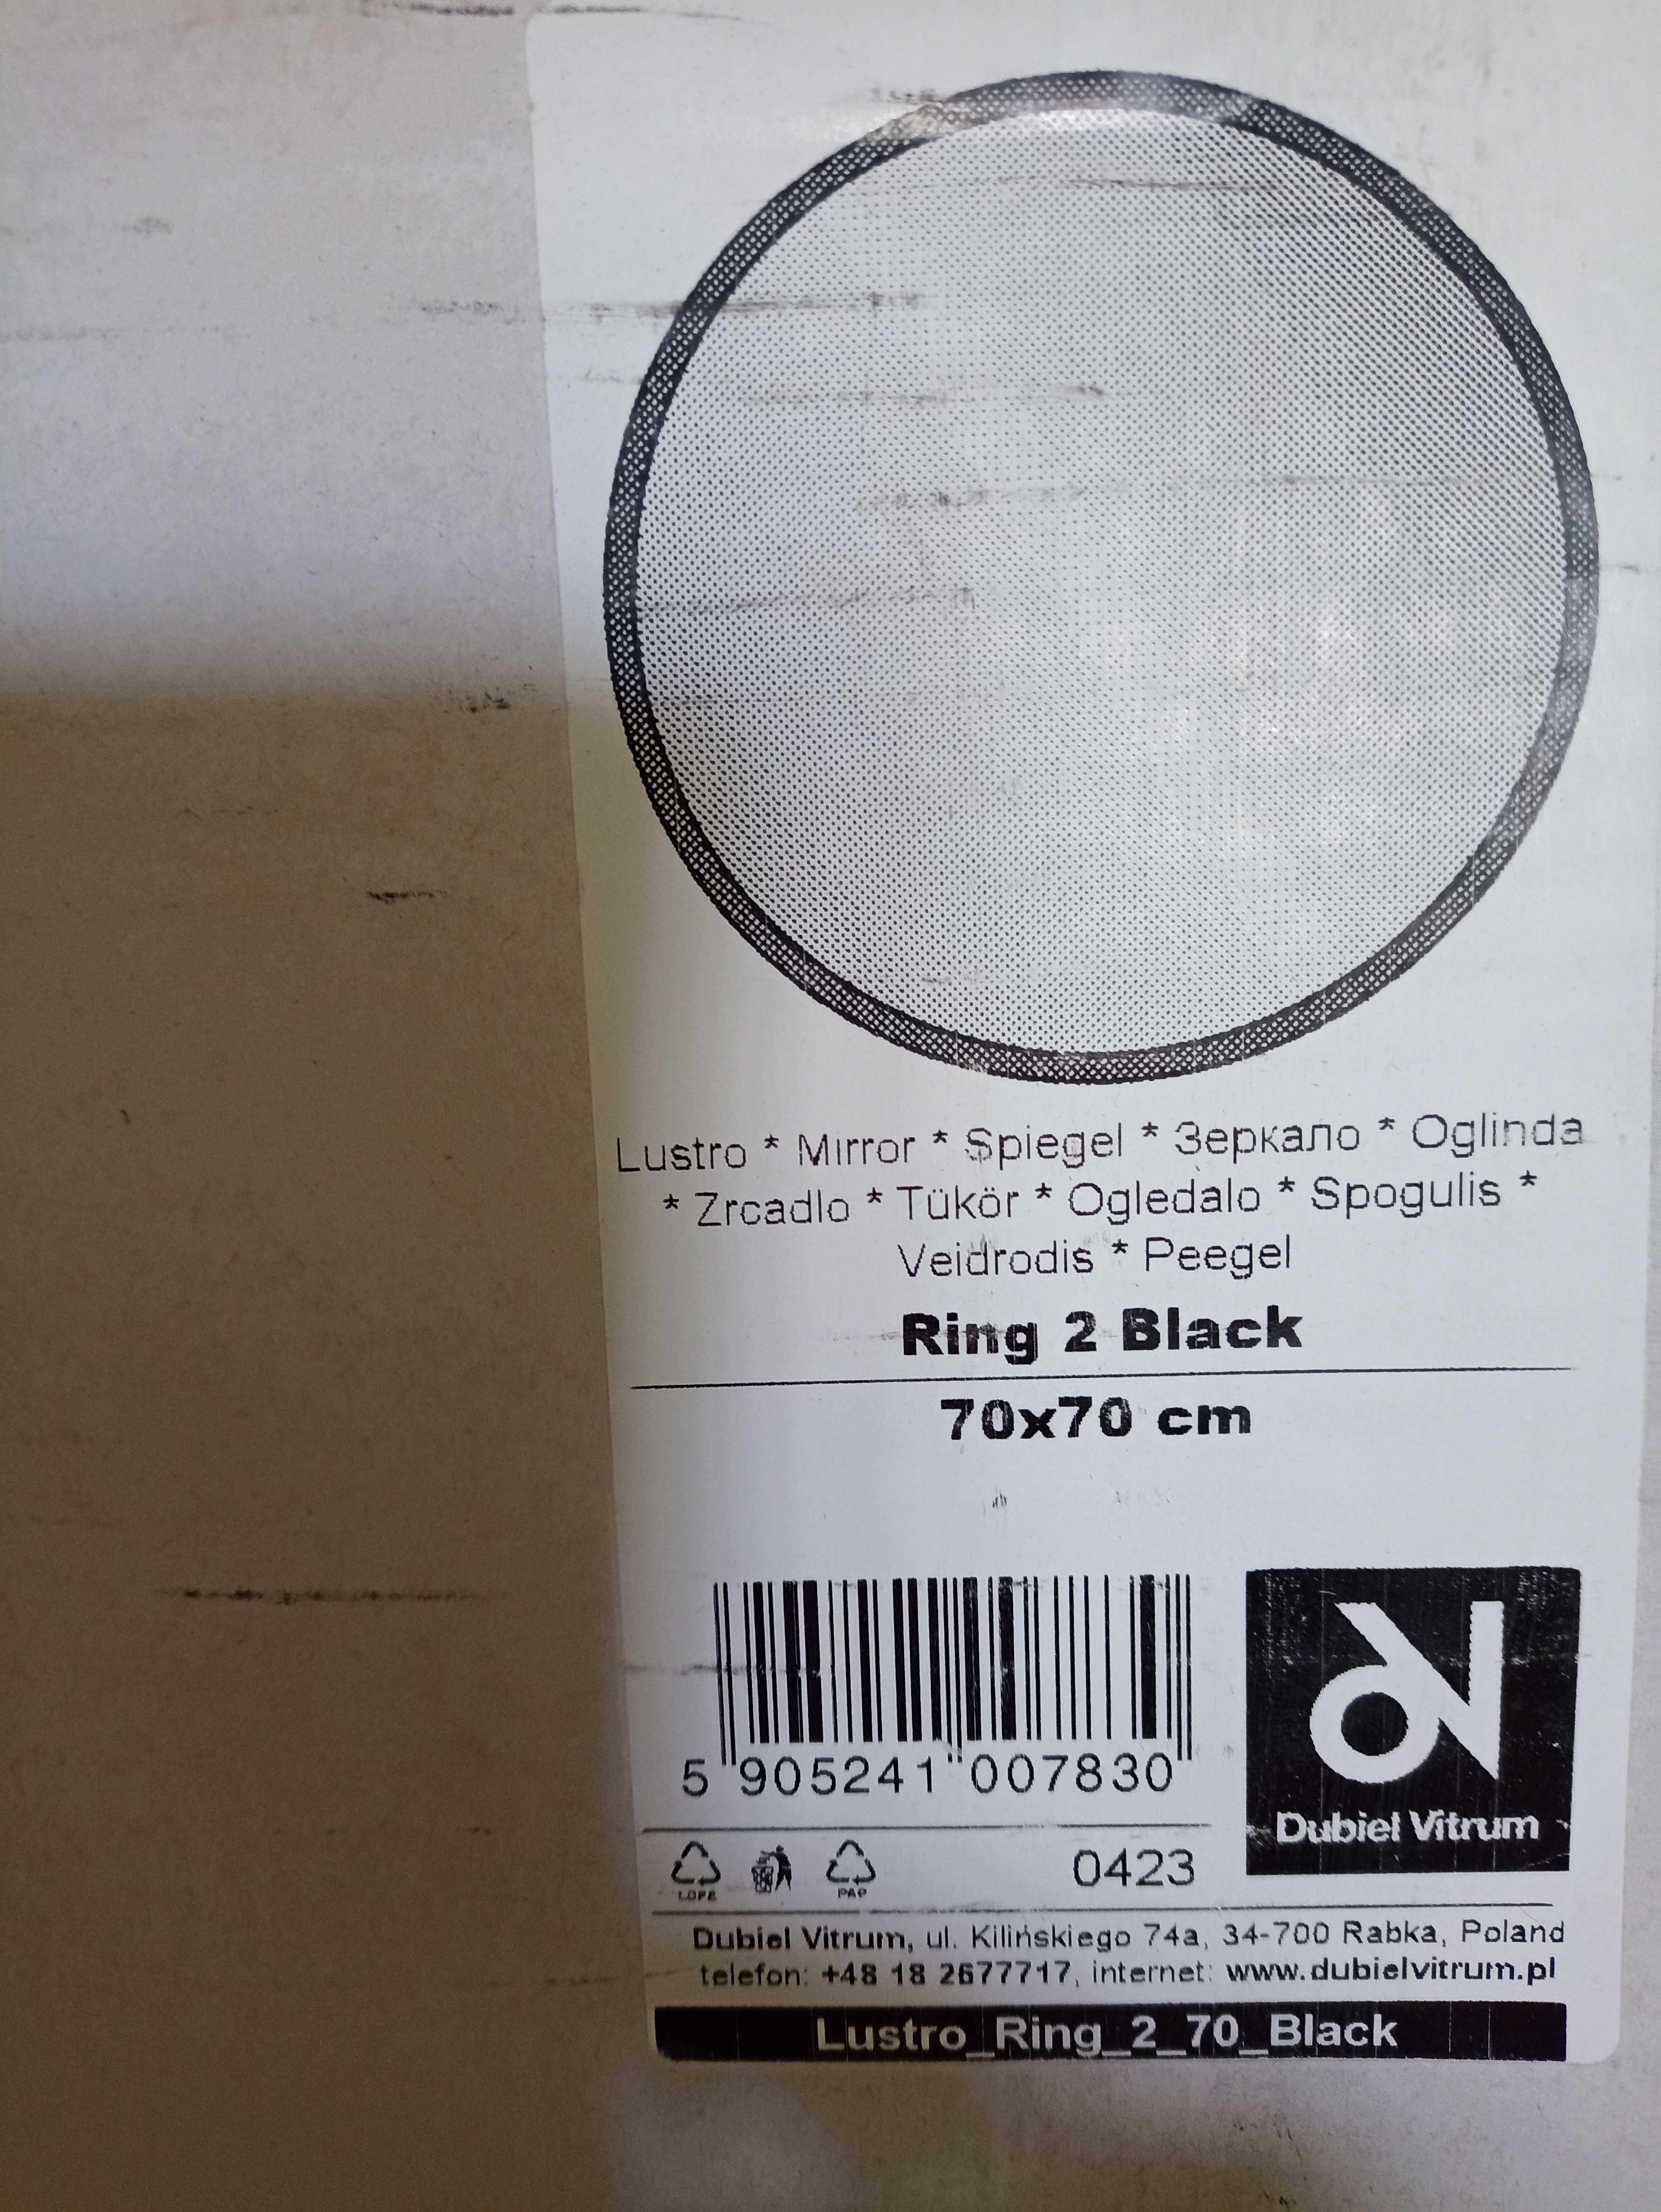 Lustro 70 cm. Ring 2 Black